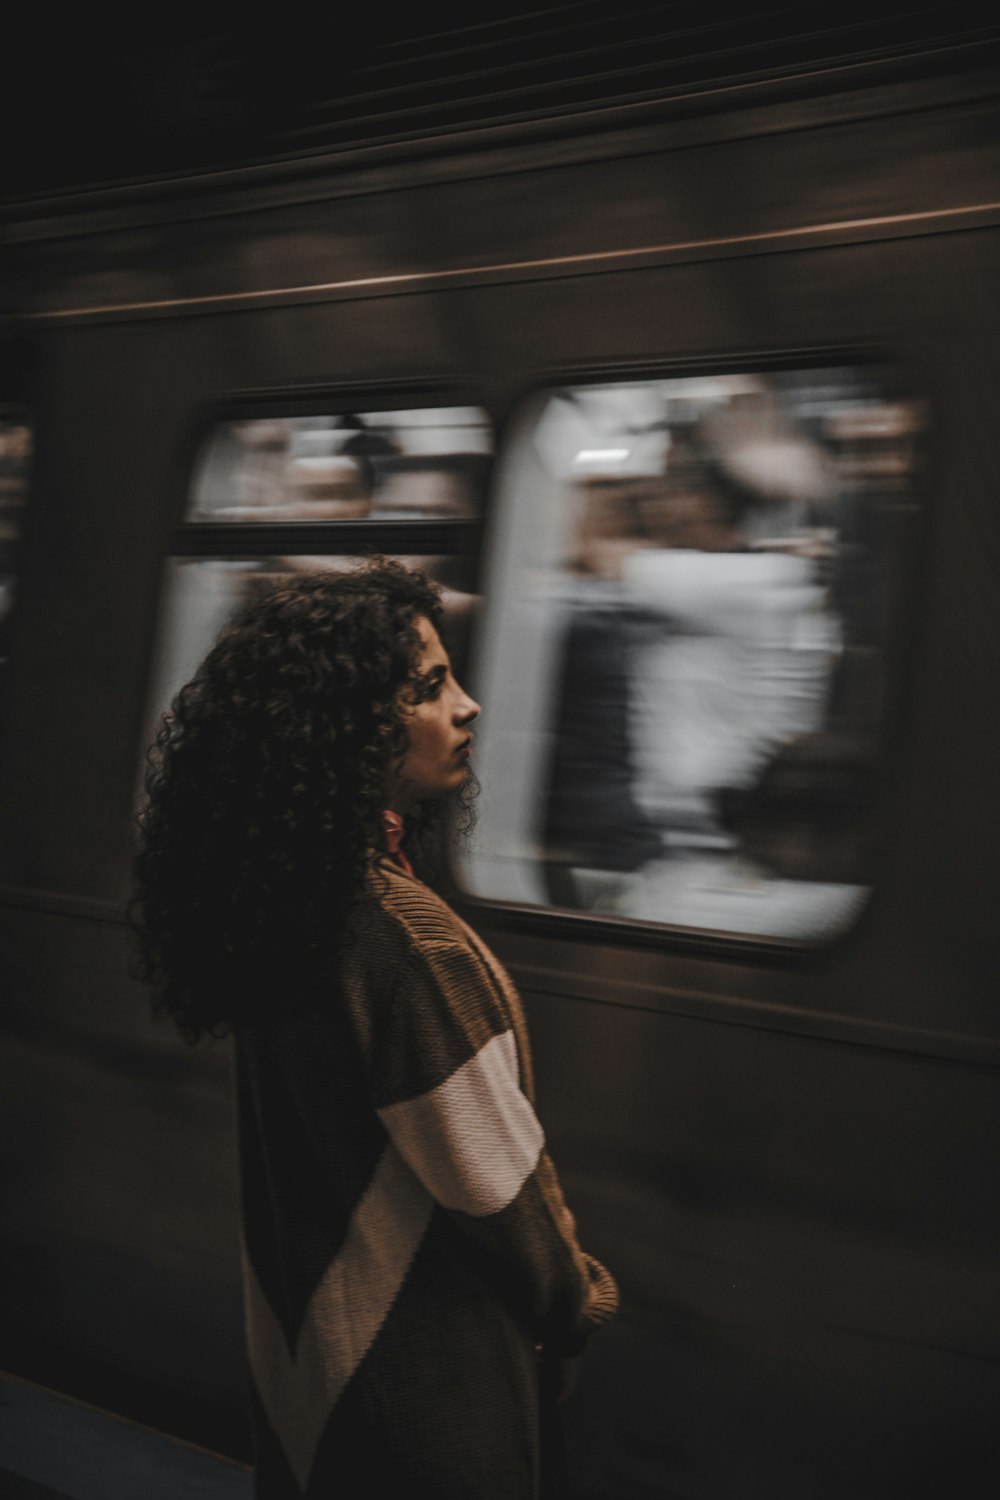 woman standing beside train